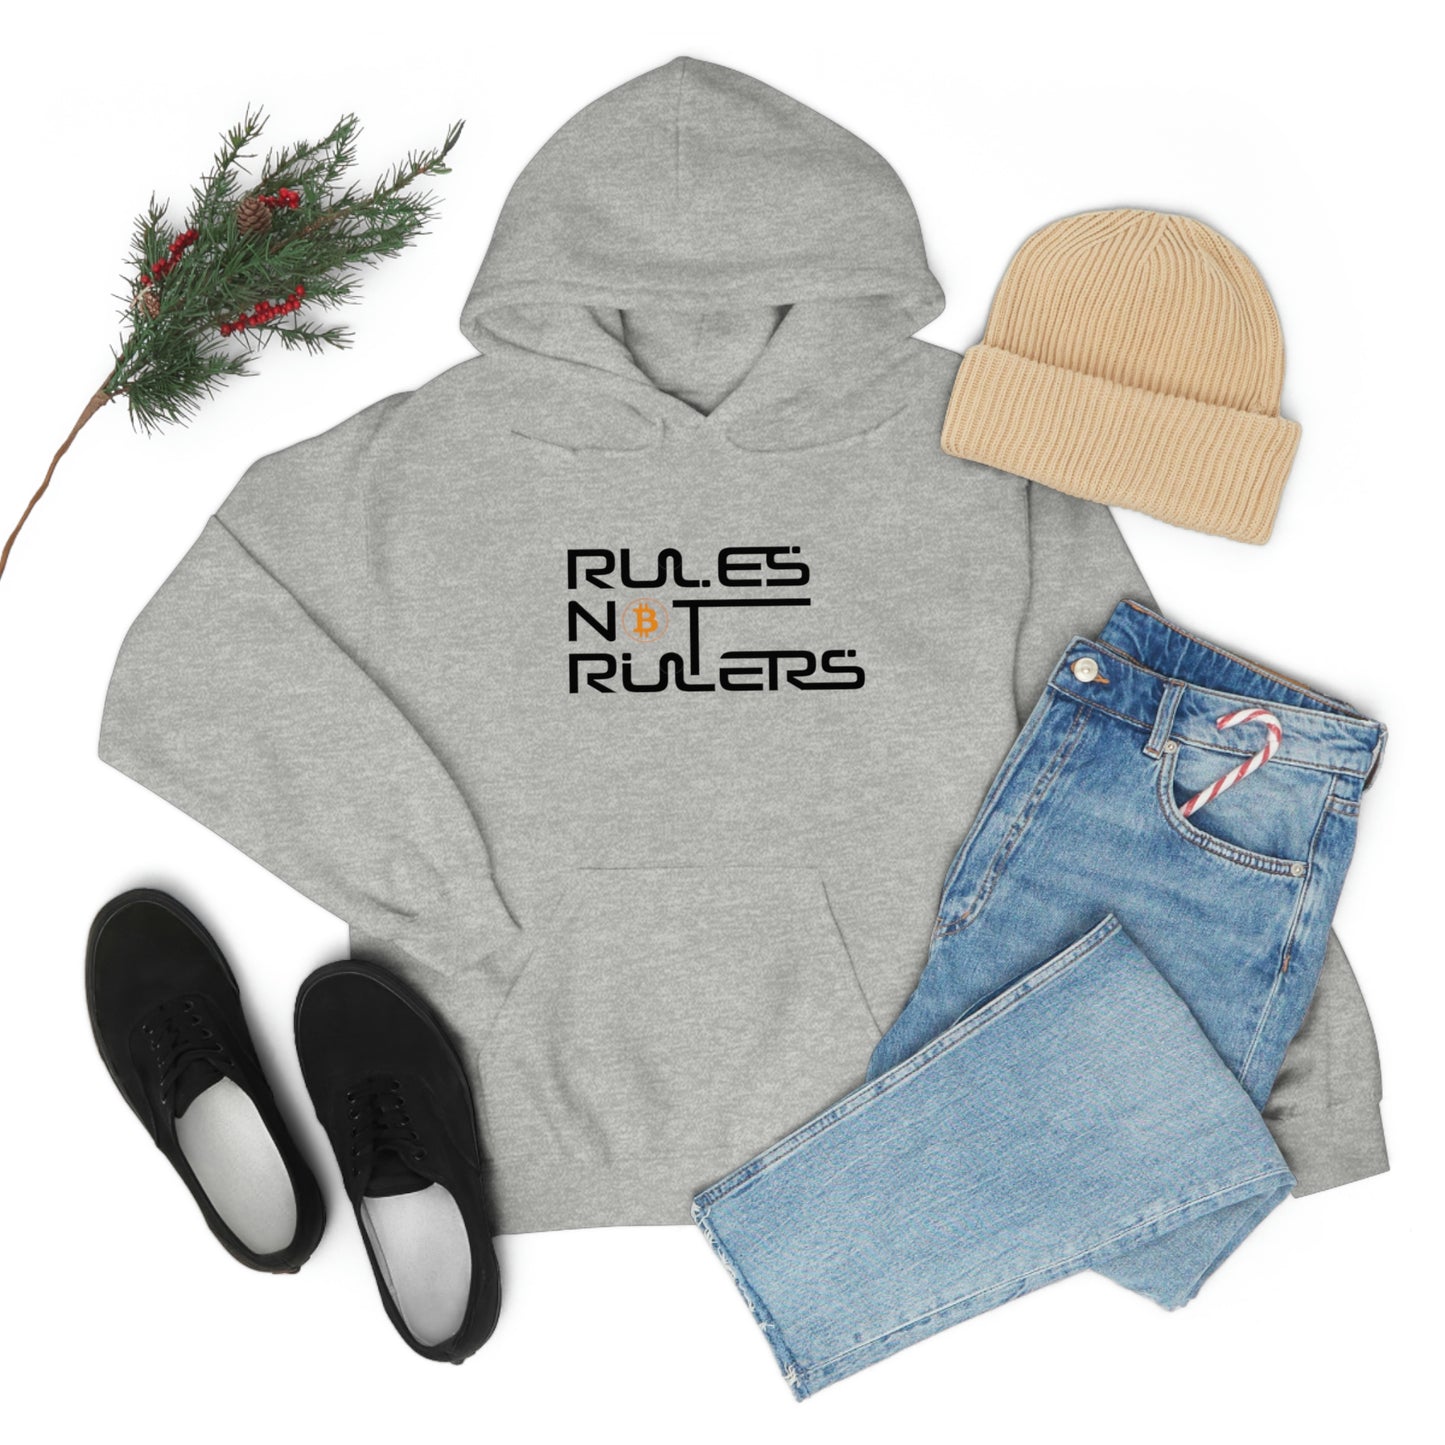 Rules Not Rulers Hooded Sweatshirt